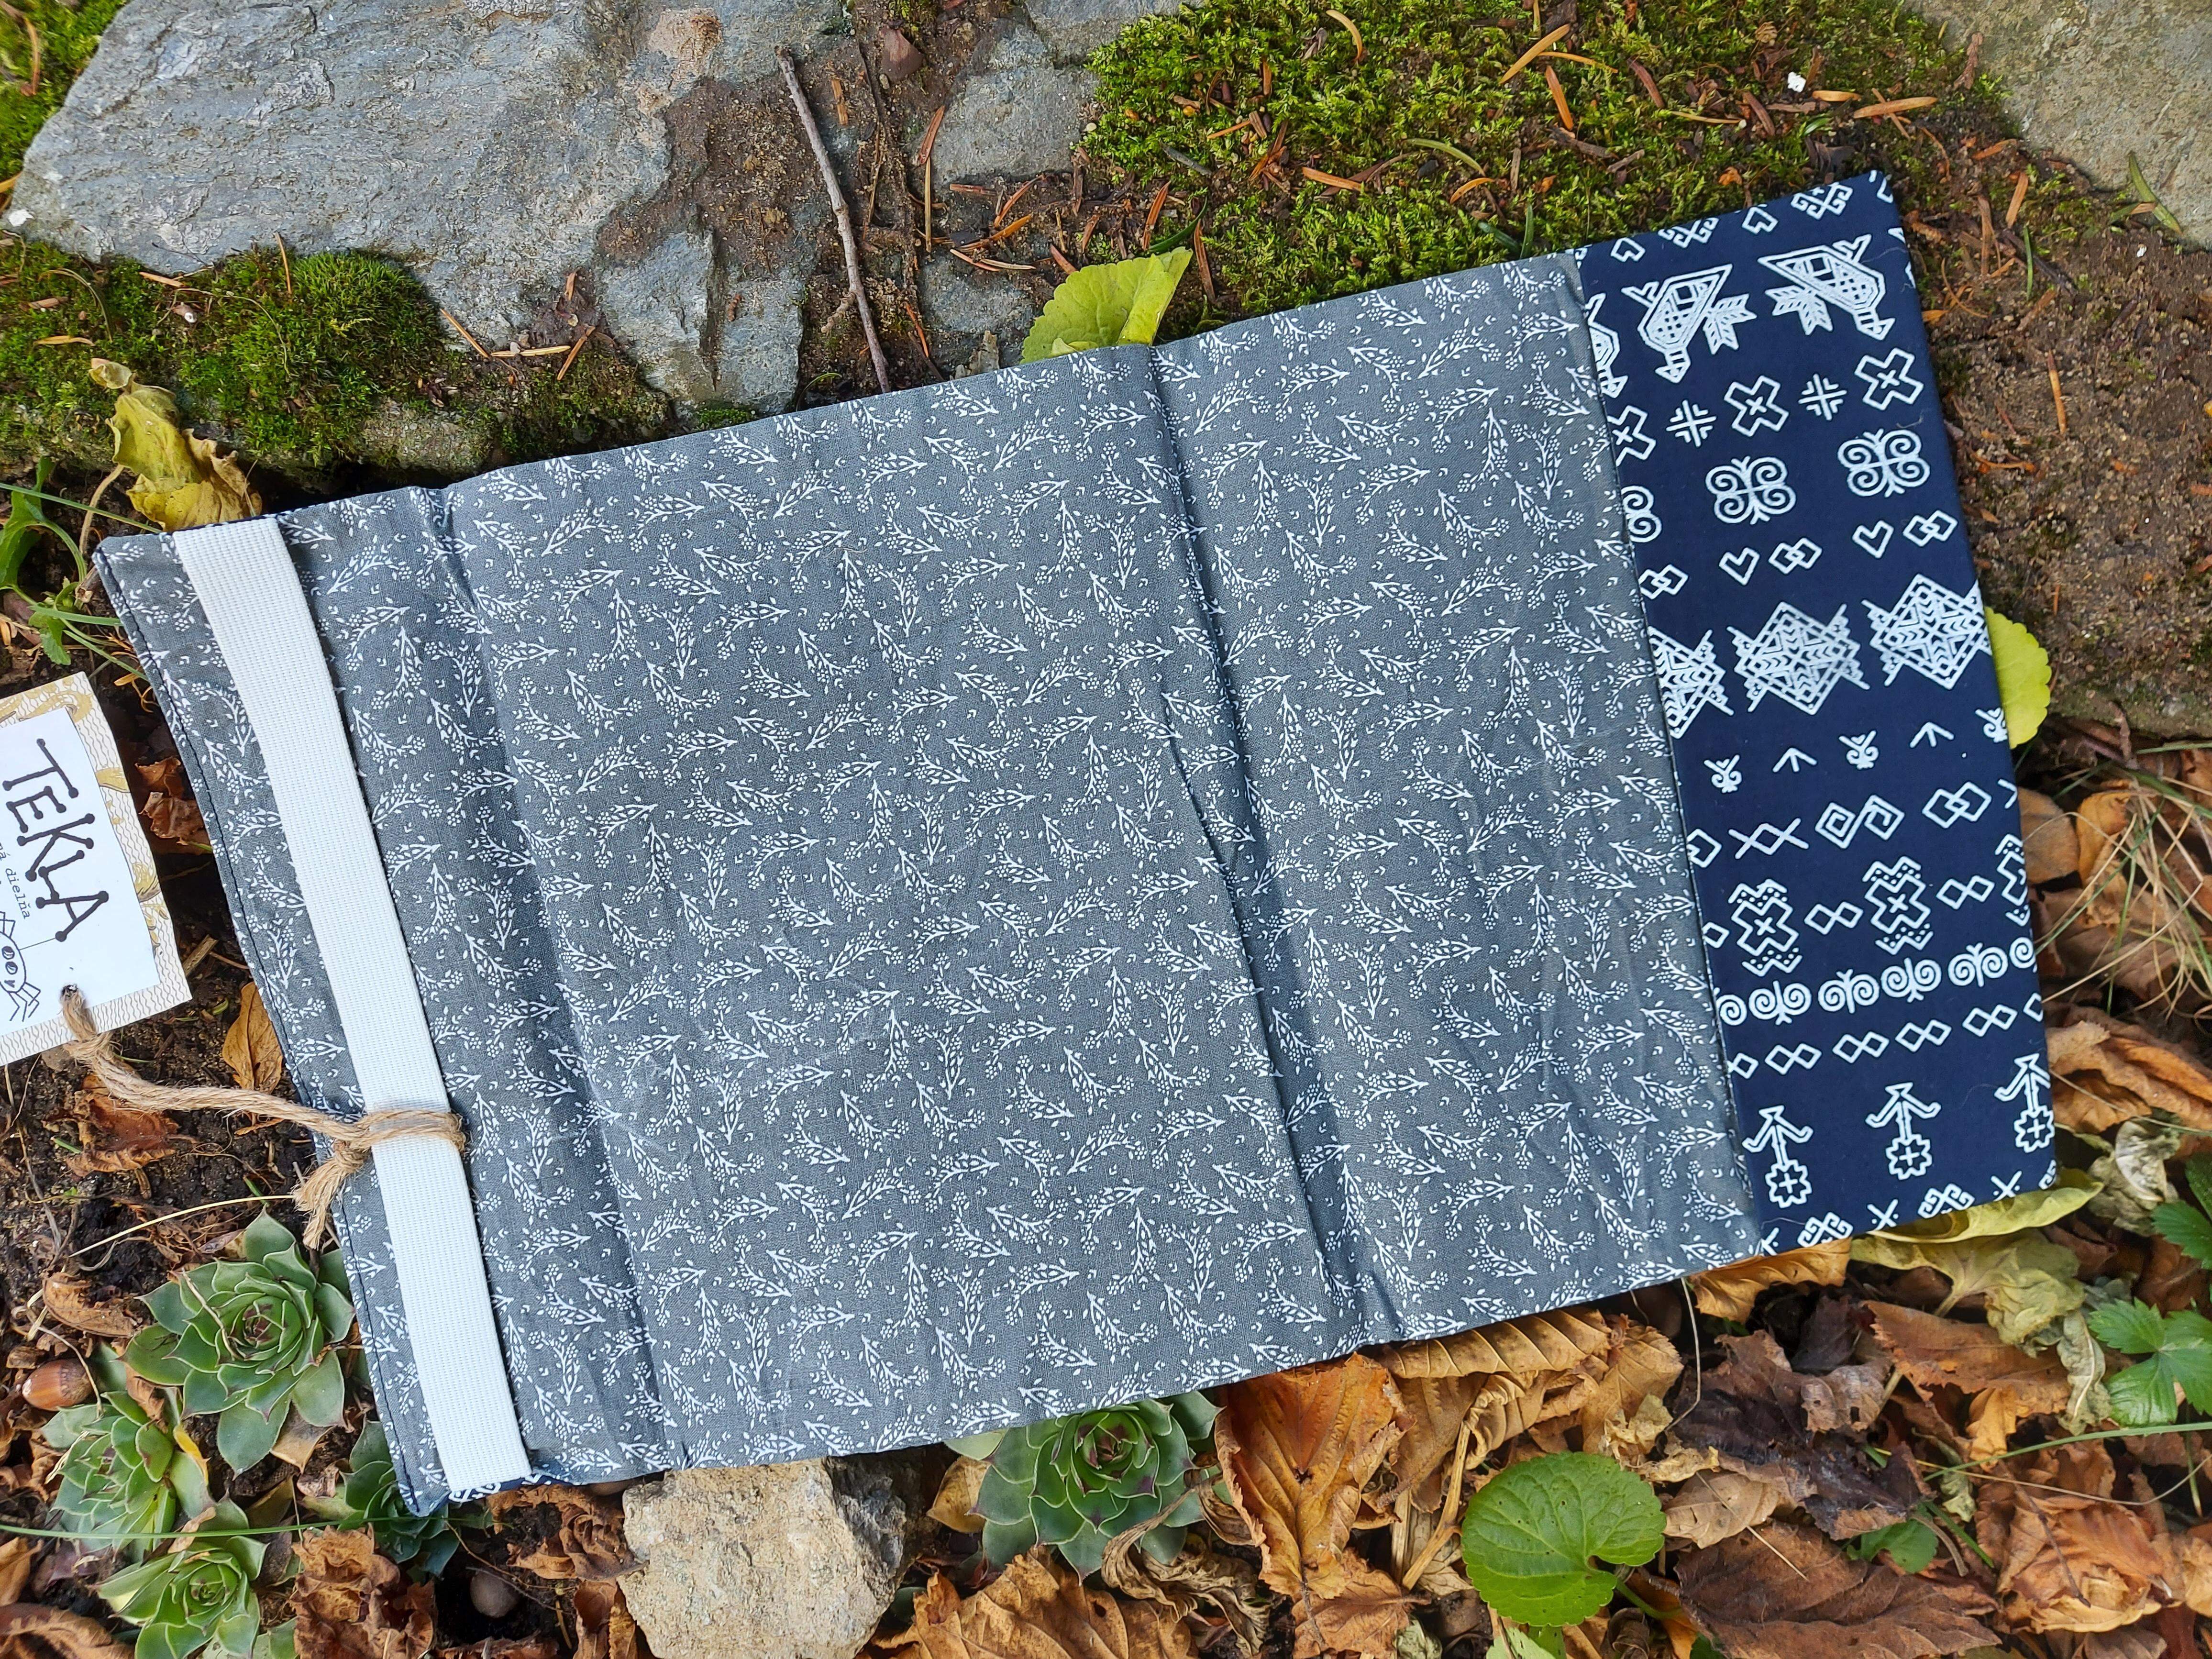 Látkový obal na knihu - modrotlač